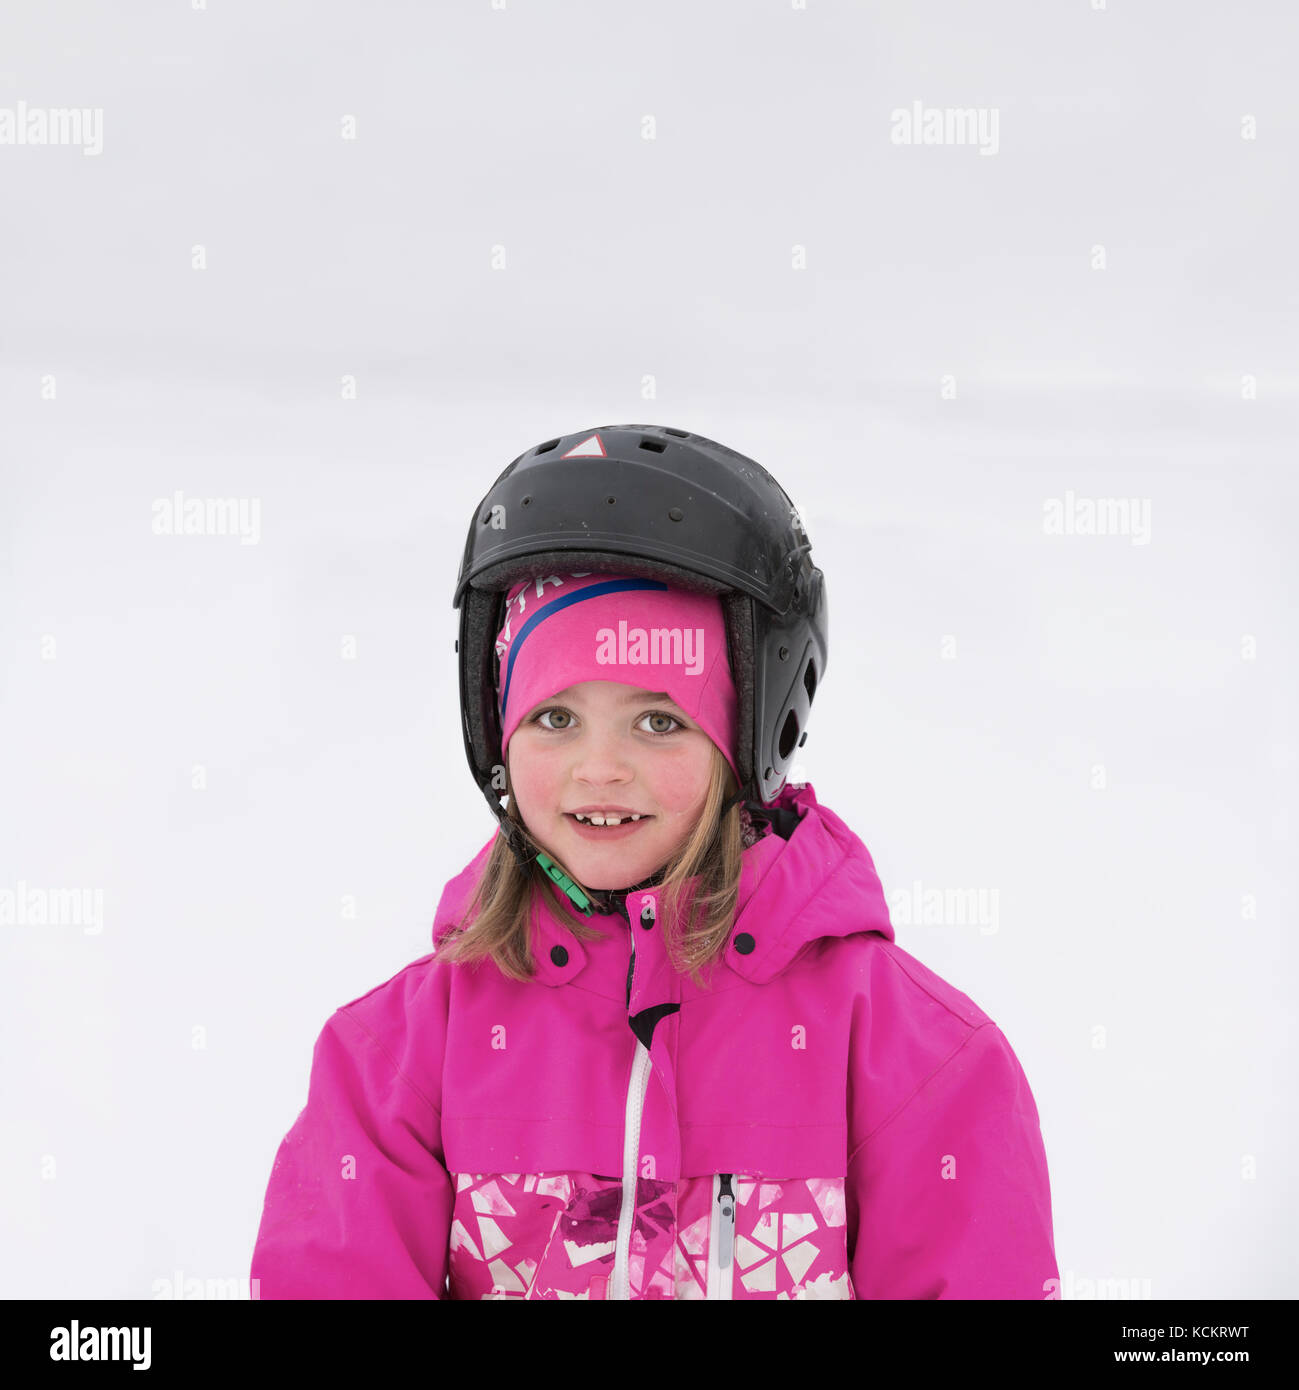 Contatto visivo Ritratto di giovane ragazza sorridente con il casco sulla neve all'aperto Foto Stock